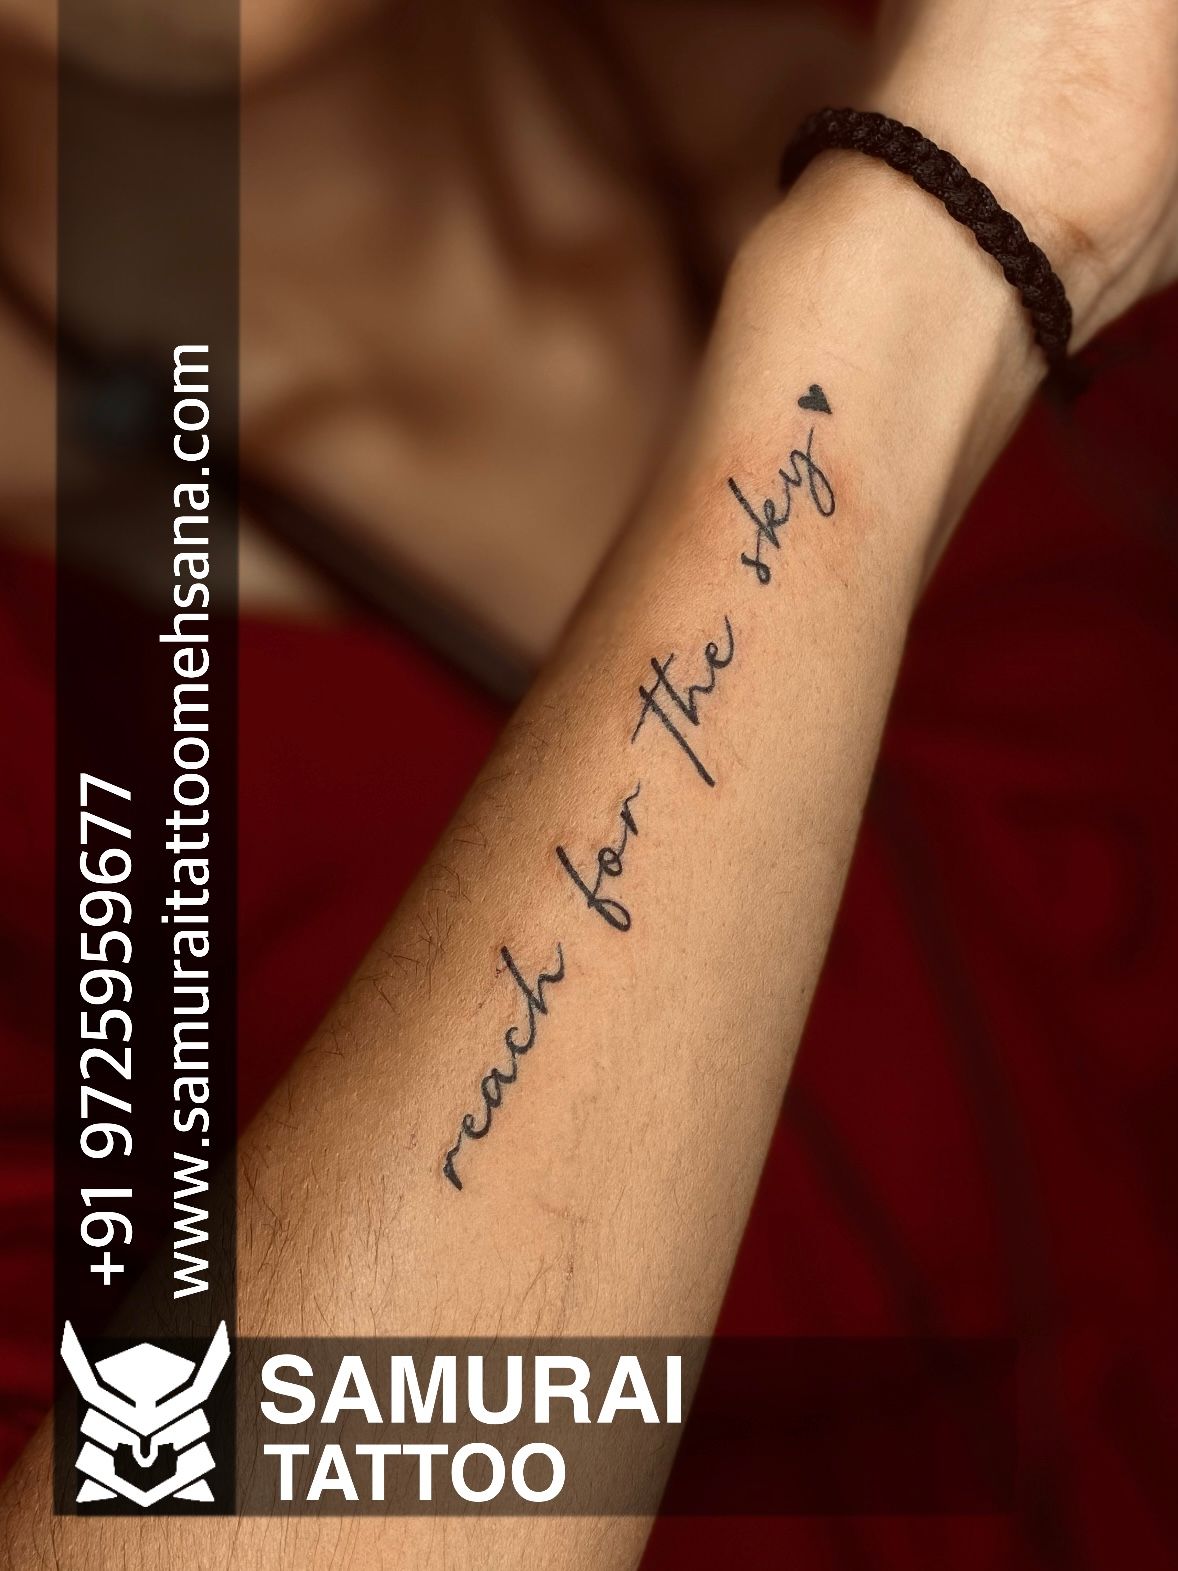 Sanskrit Tattoos on Foot – Authentic Sanskrit Tattoos